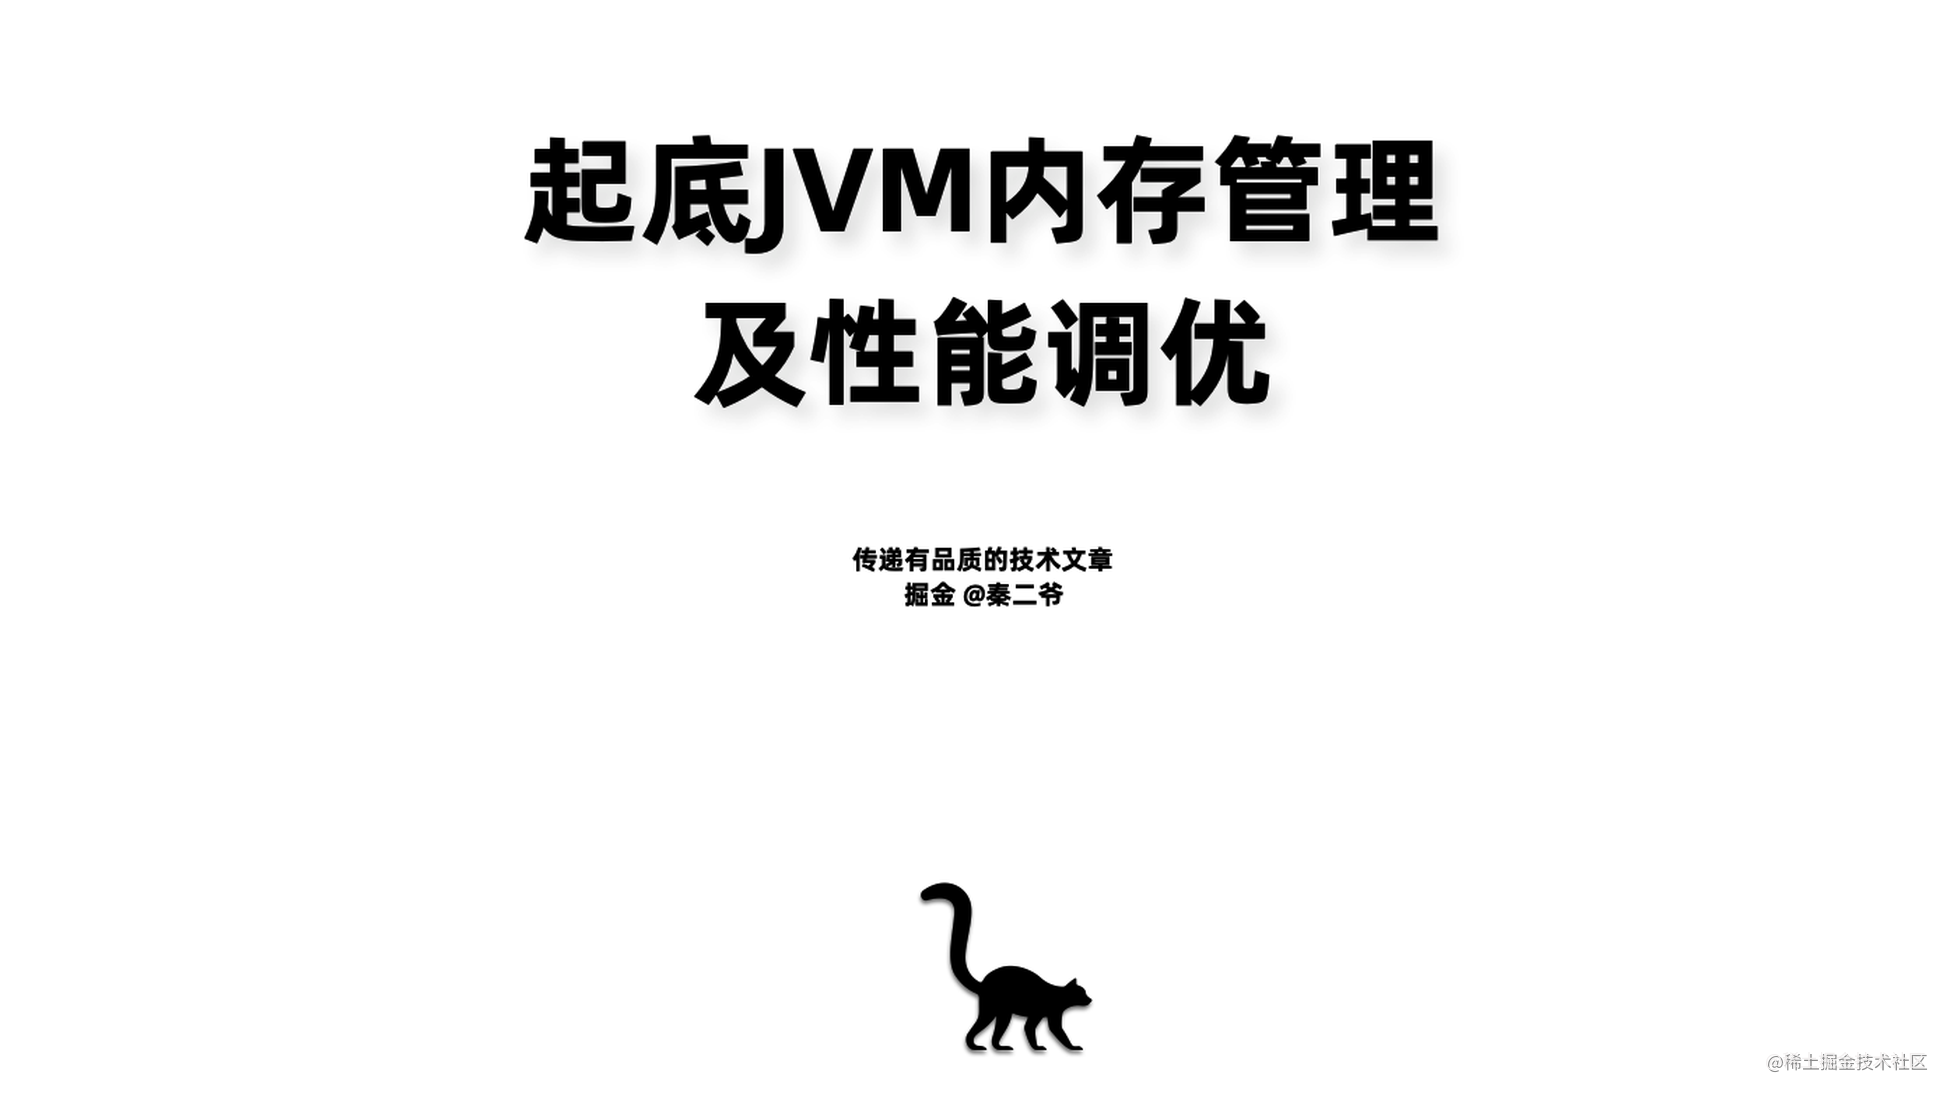 起底JVM内存管理及性能调优【80+页Keynote私享】